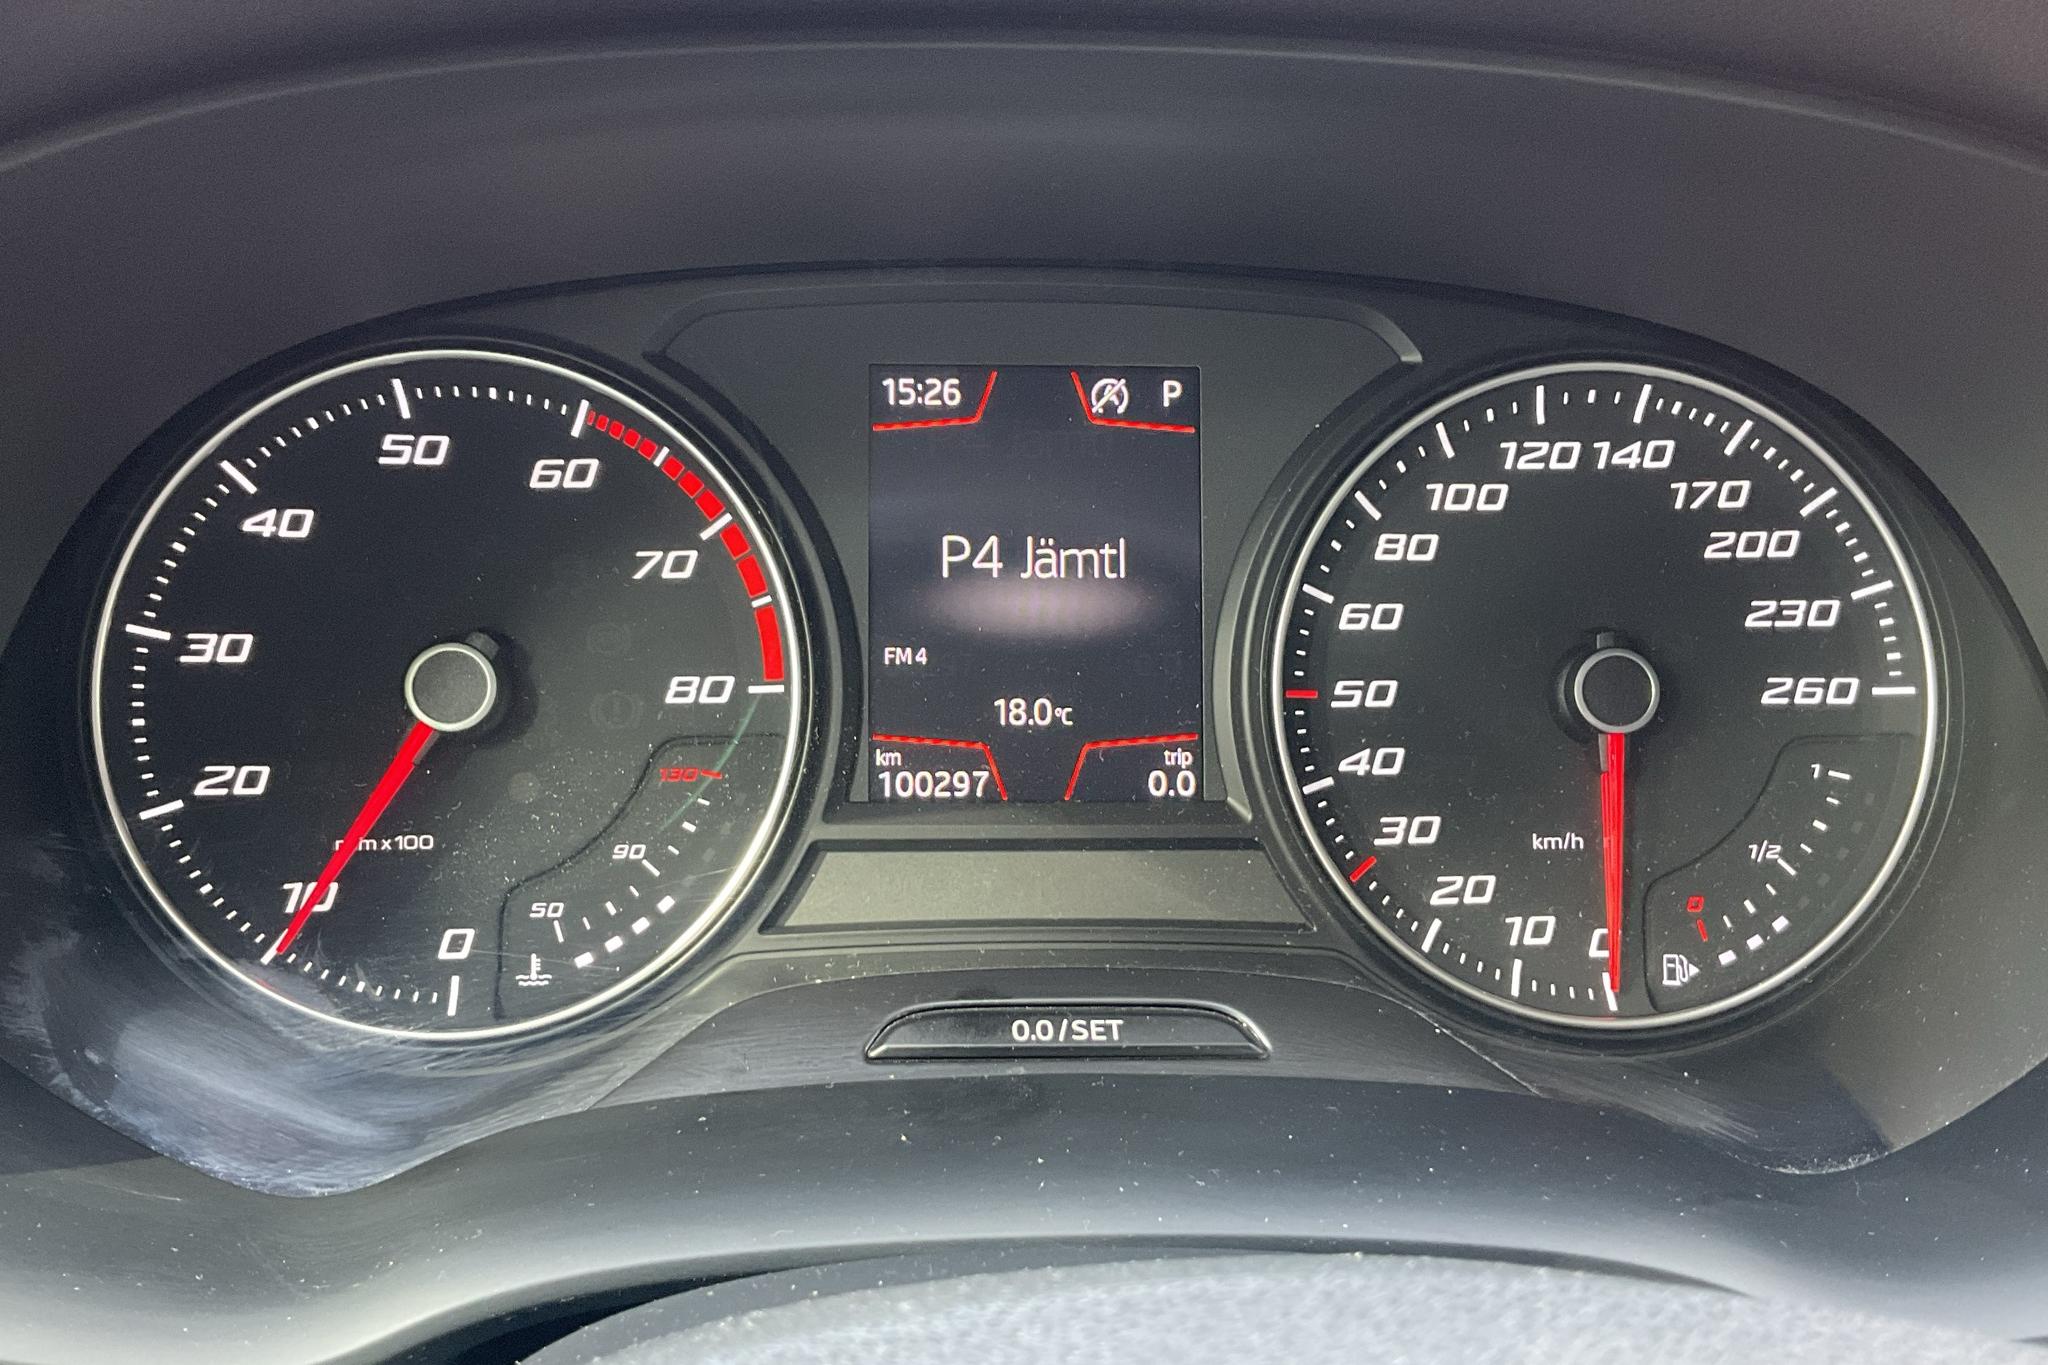 Seat Ateca 1.5 TSI ACT 4Drive (150hk) - 100 290 km - Automatic - blue - 2019